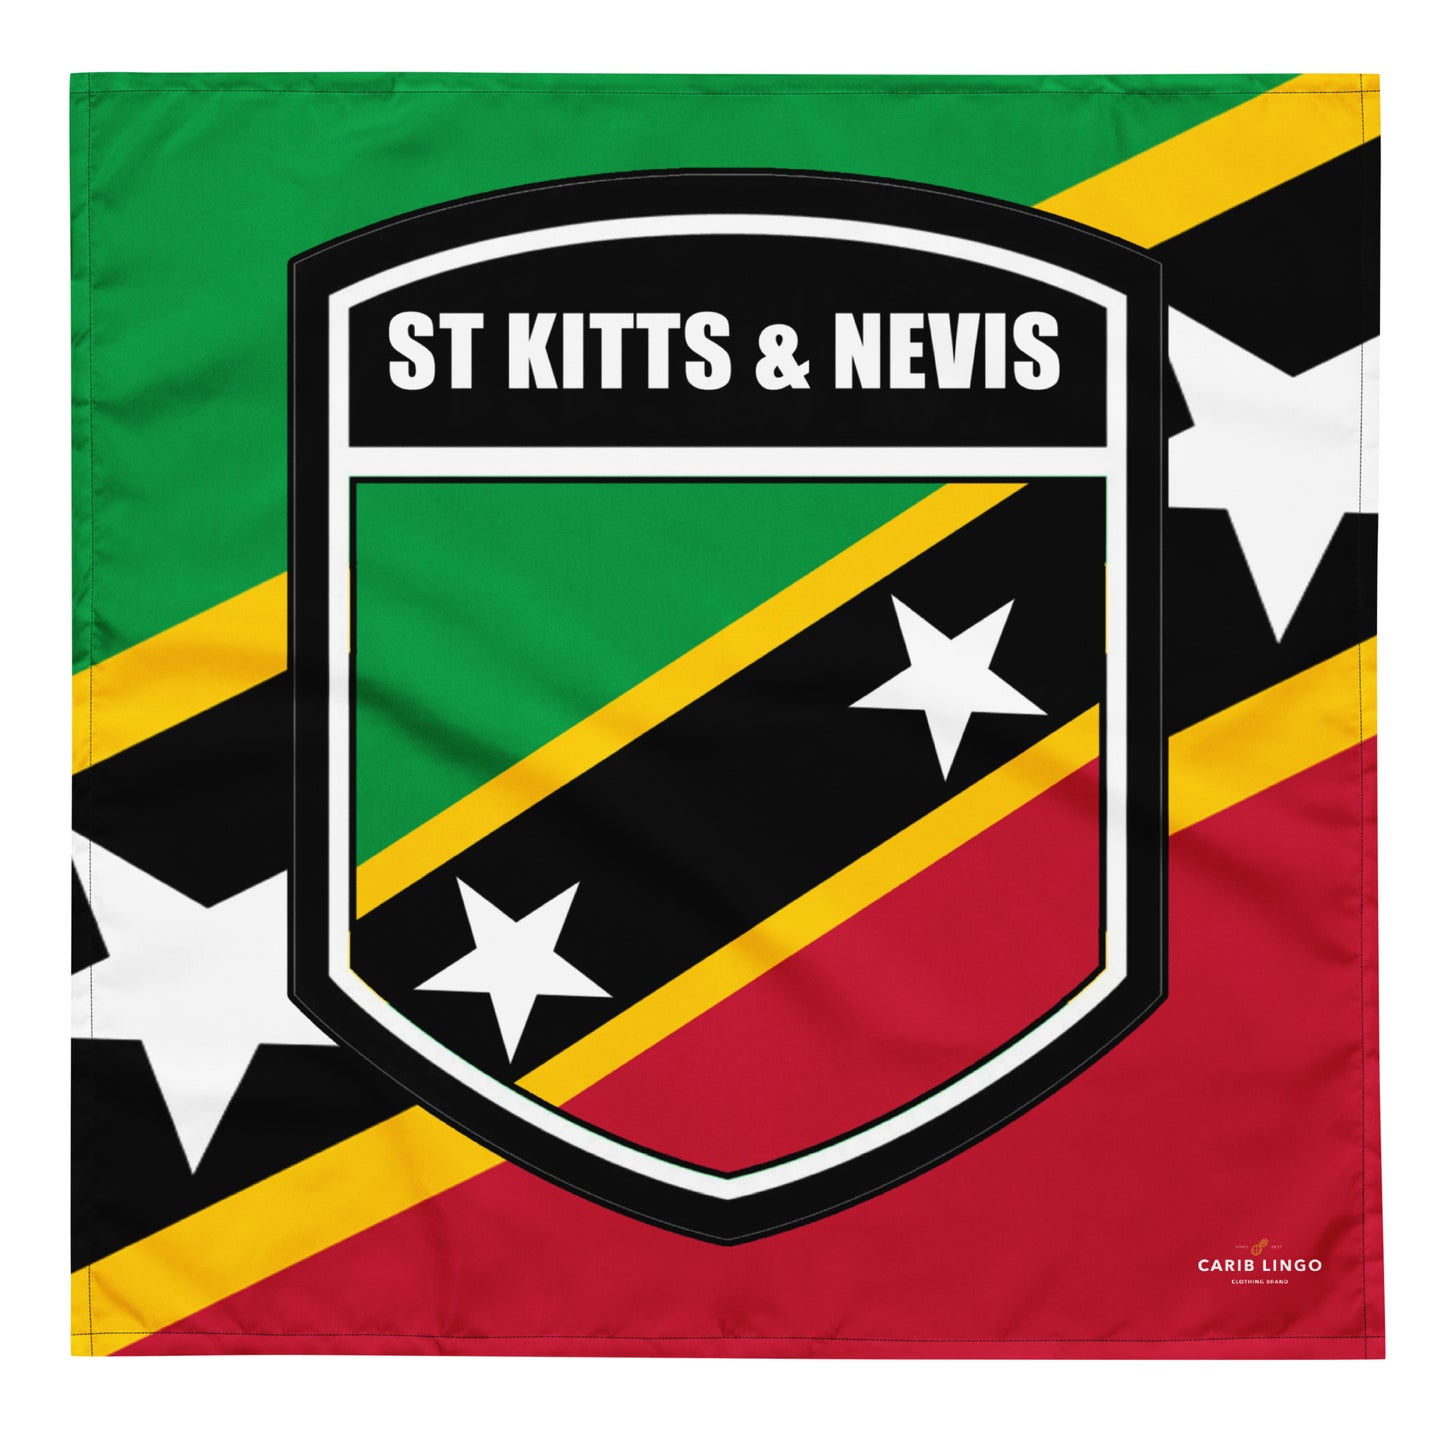 St. Kitts & Nevis bandana